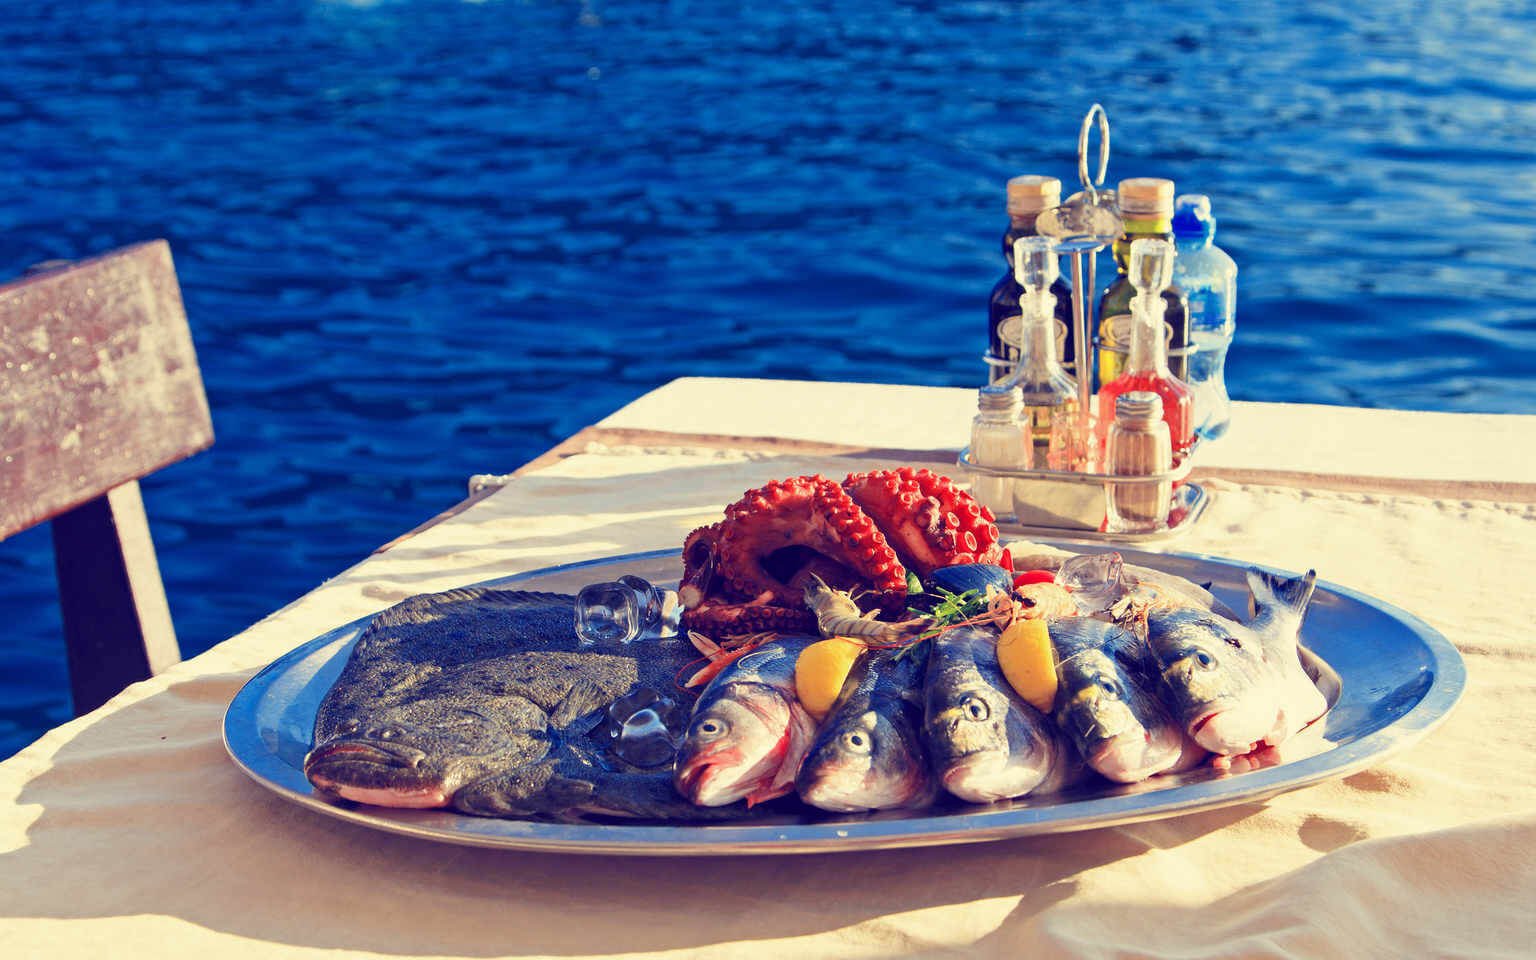 Средиземноморская кухня